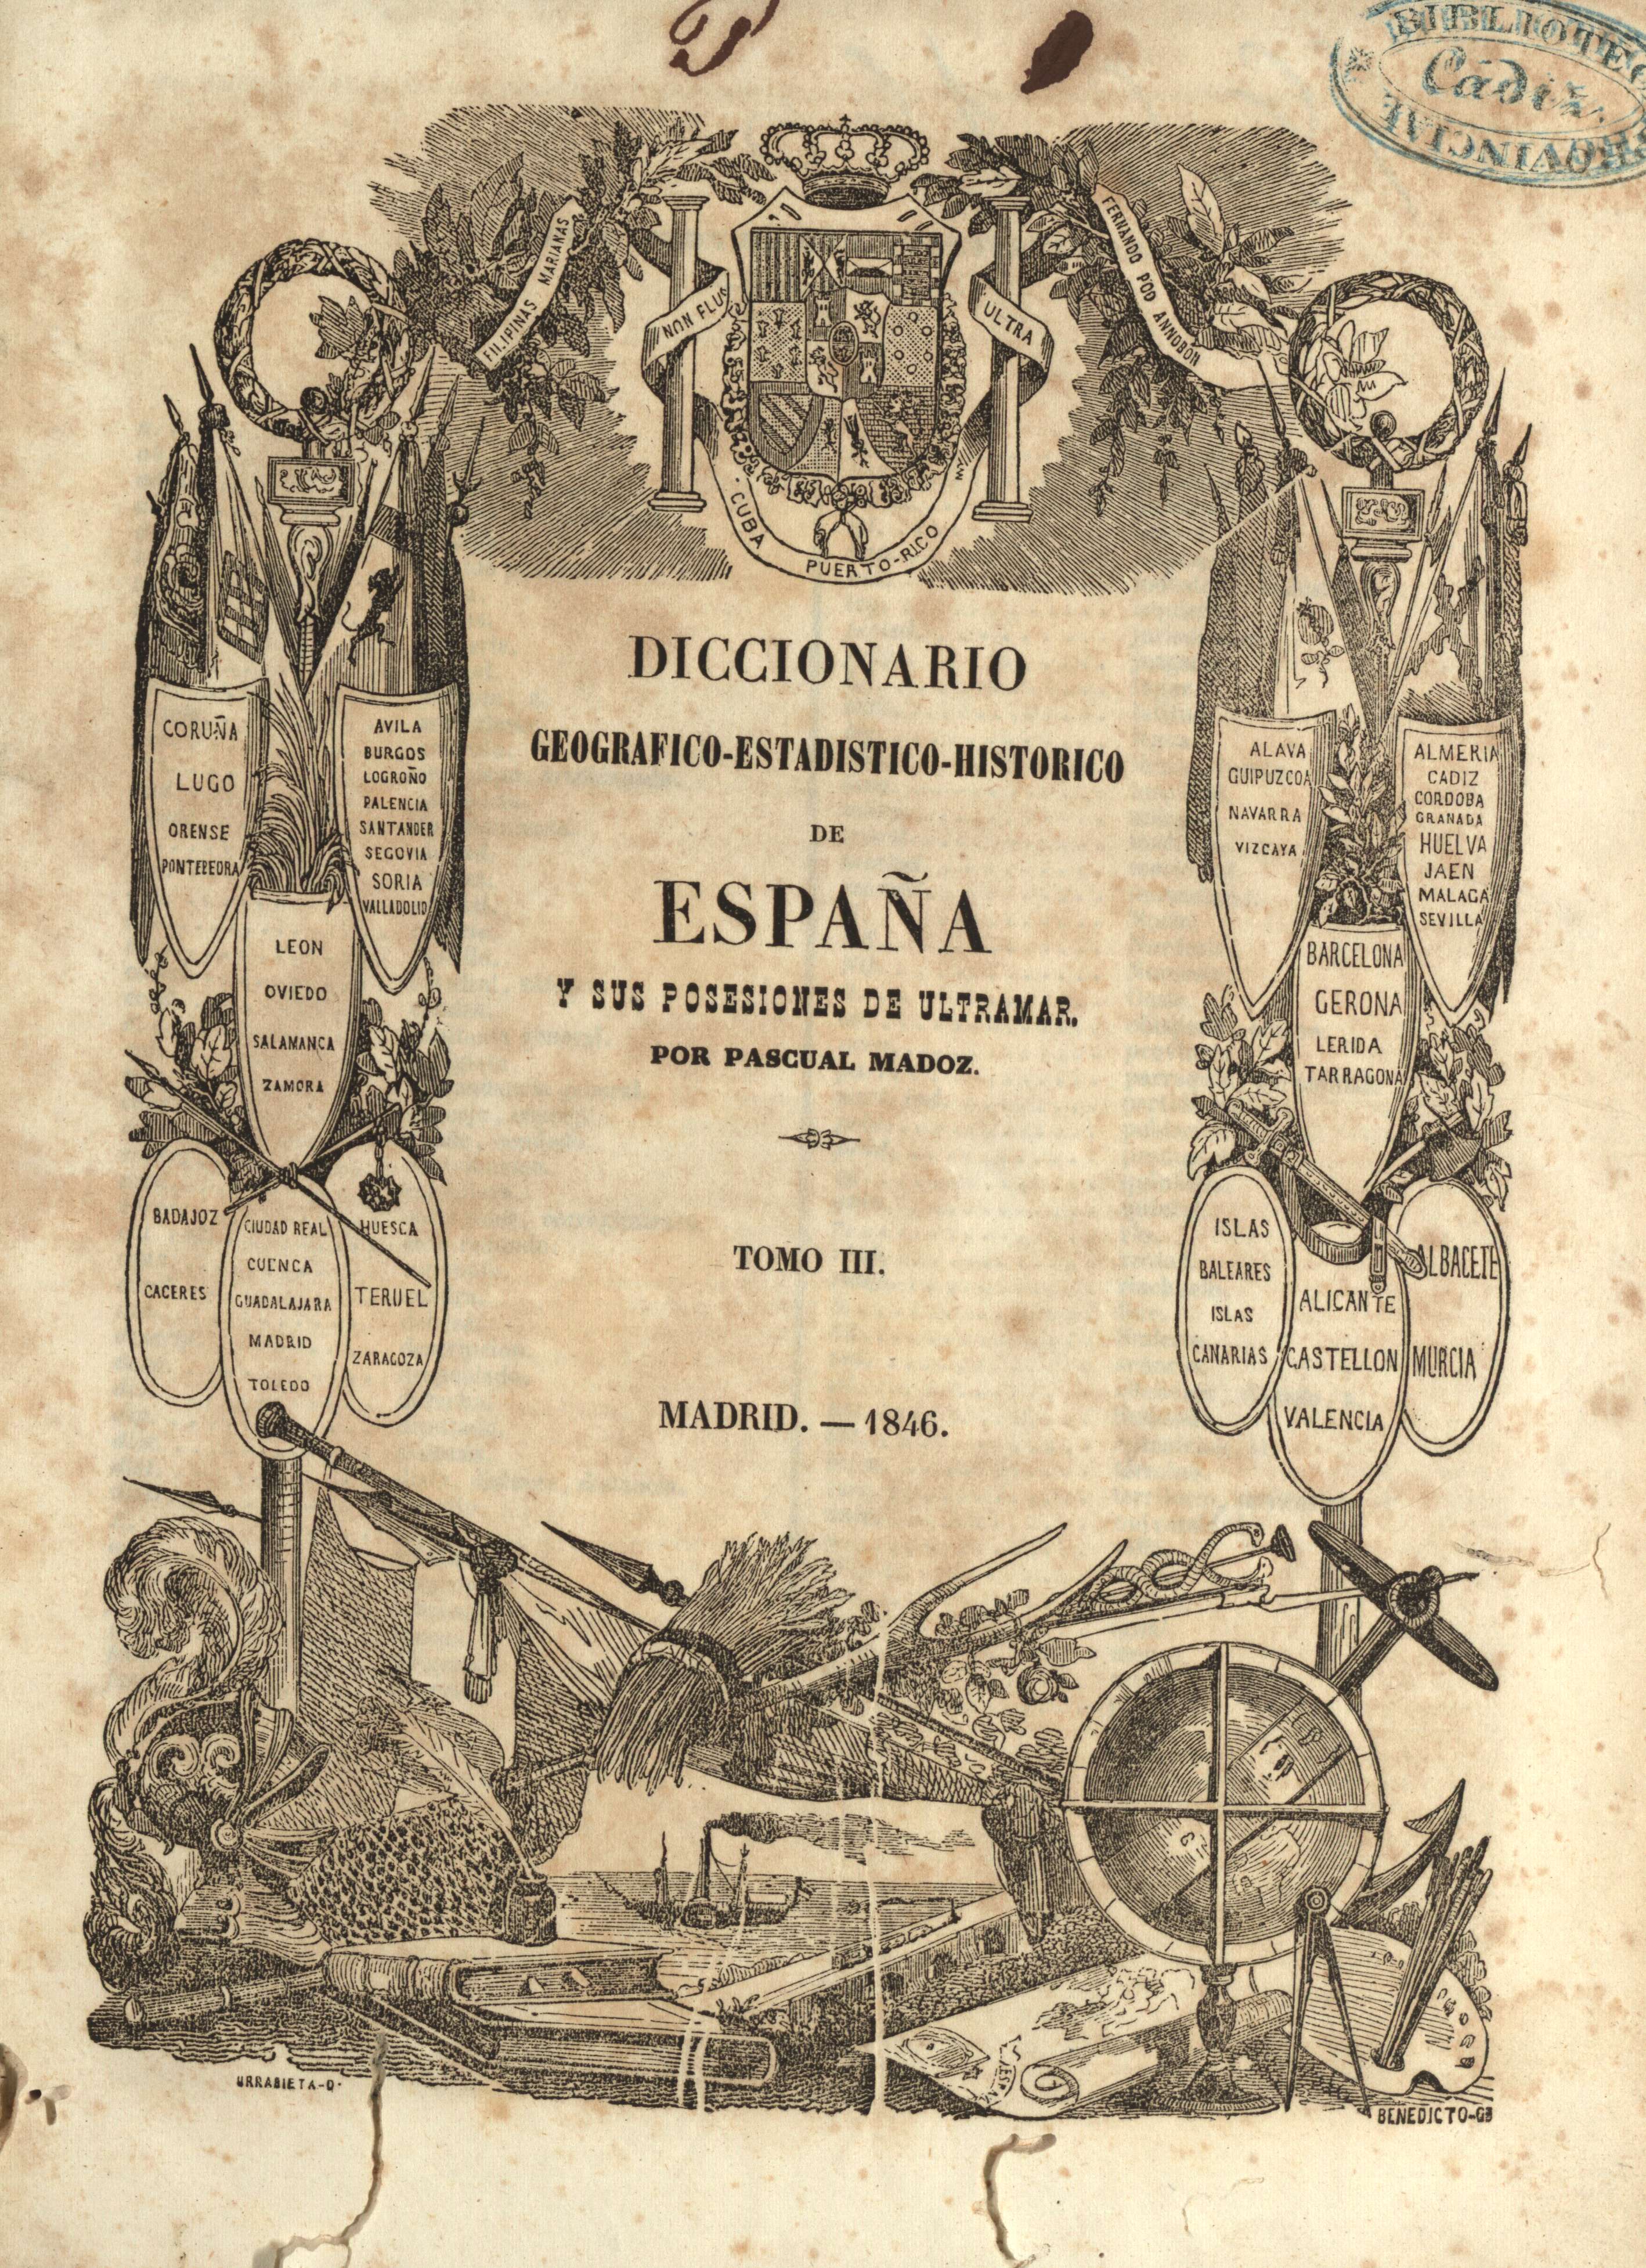 Diccionario geografico-estadistico-historico de España y sus posesiones de ultramar por Pascual Madoz. Tomo III